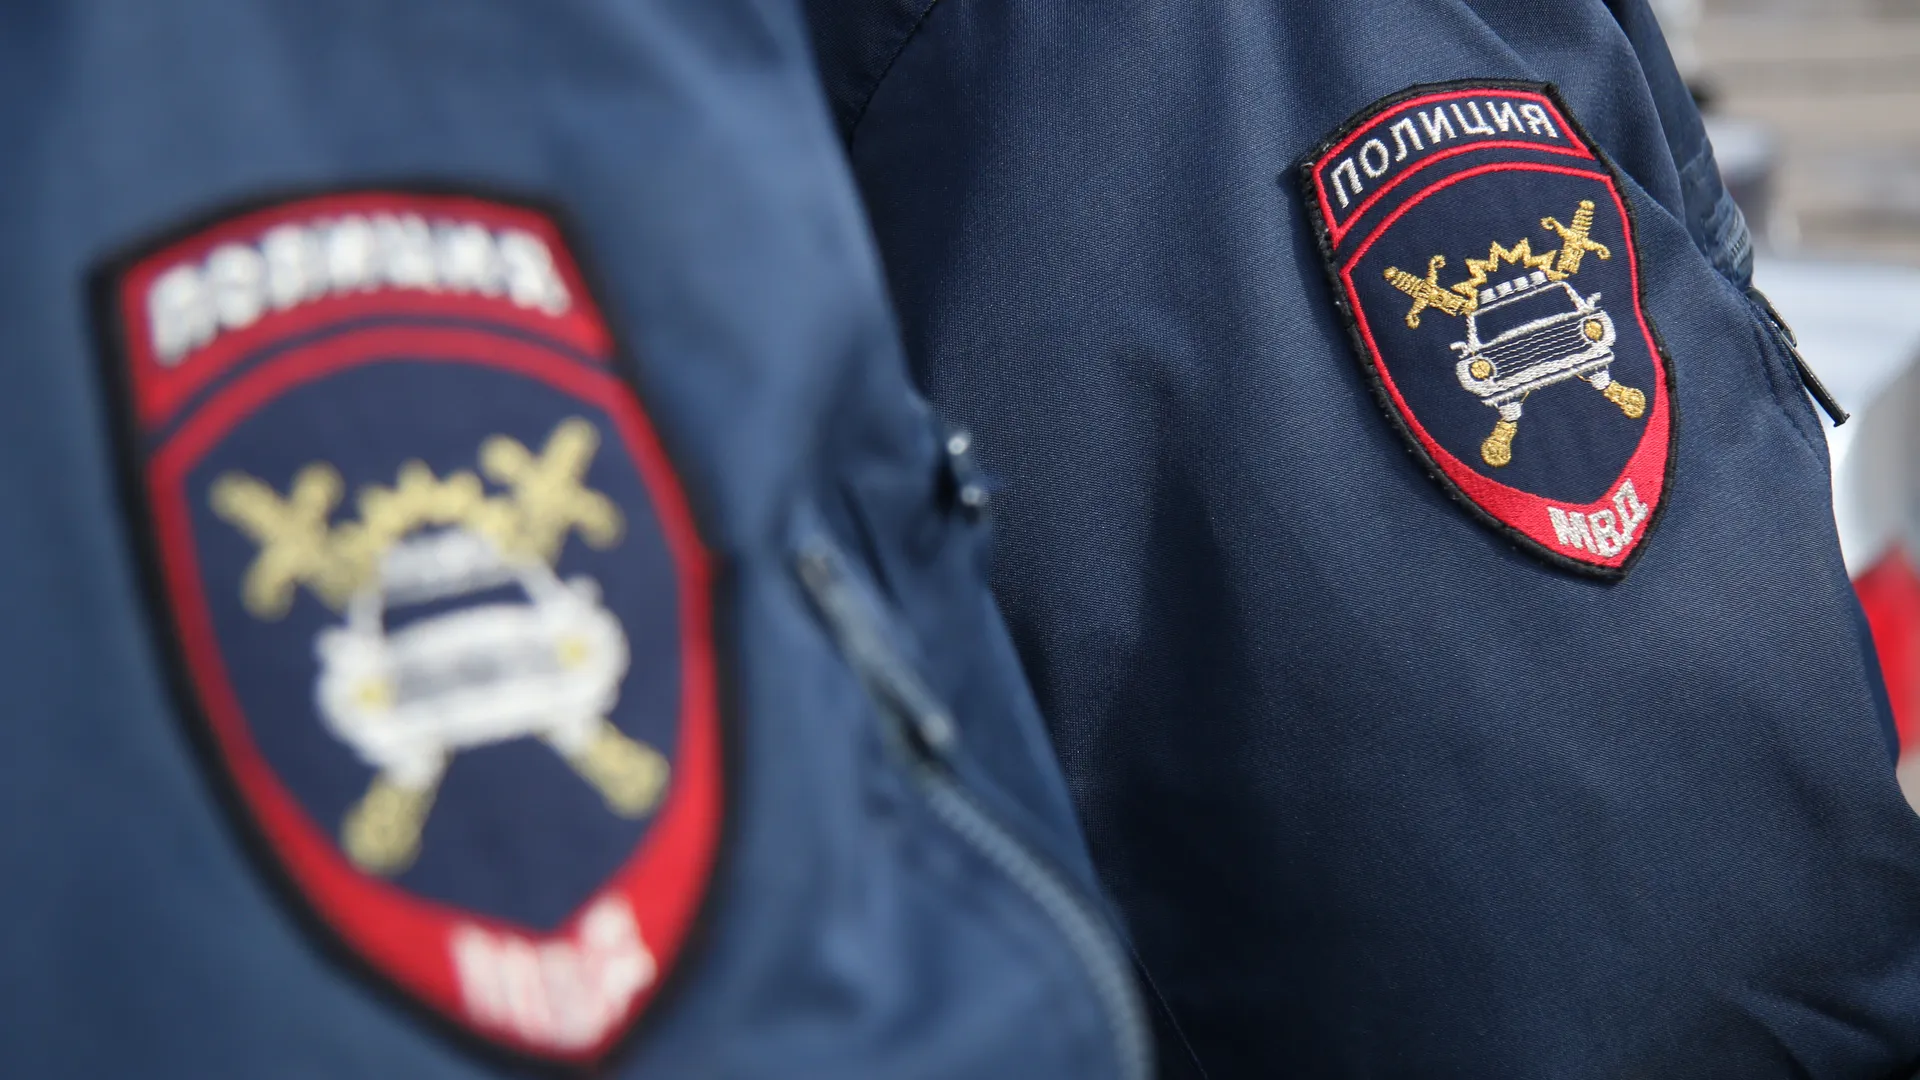 Арестован мужчина, пытавшийся поджечь здание правительства Владимирской области